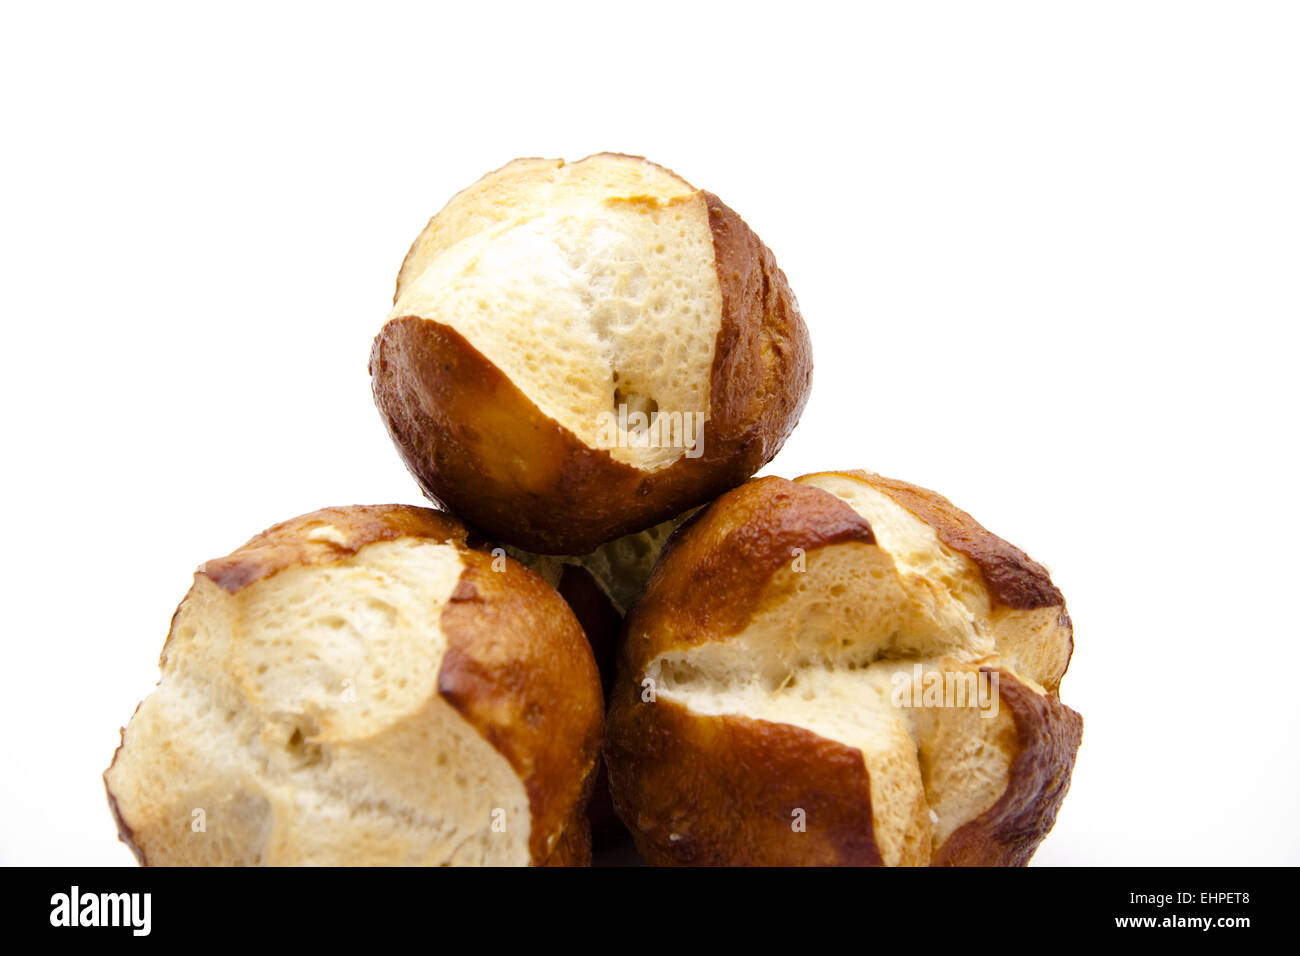 Lye bread rolls baked Stock Photo